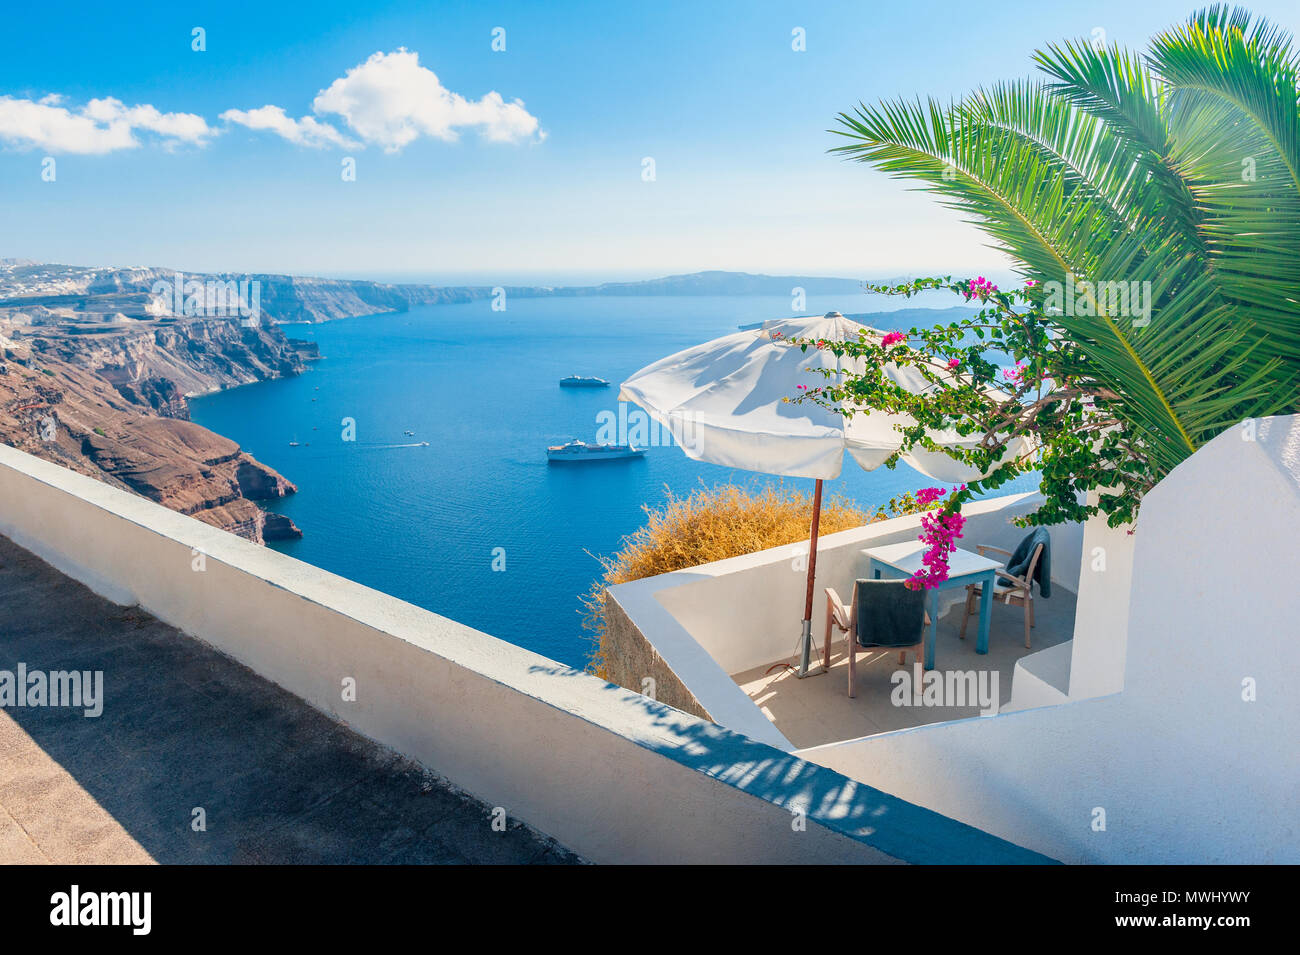 Outlook over Caldera of Santorini, Cyclades Islands, Greece Stock Photo